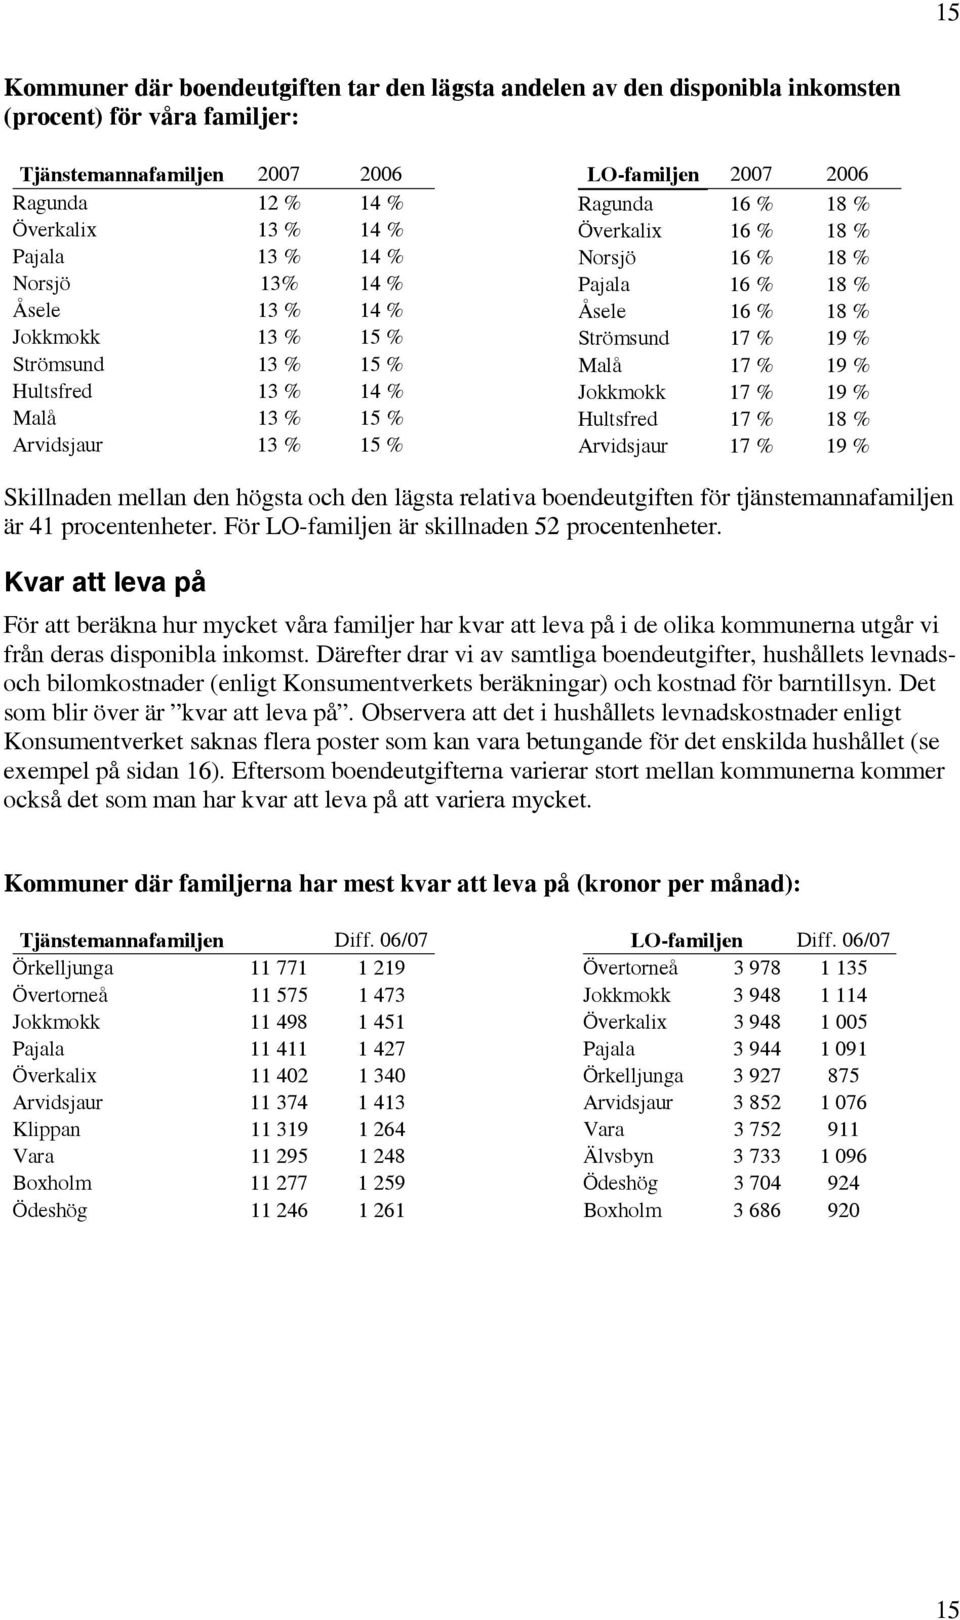 18 % Pajala 16 % 18 % Åsele 16 % 18 % Strömsund 17 % 19 % Malå 17 % 19 % Jokkmokk 17 % 19 % Hultsfred 17 % 18 % Arvidsjaur 17 % 19 % Skillnaden mellan den högsta och den lägsta relativa